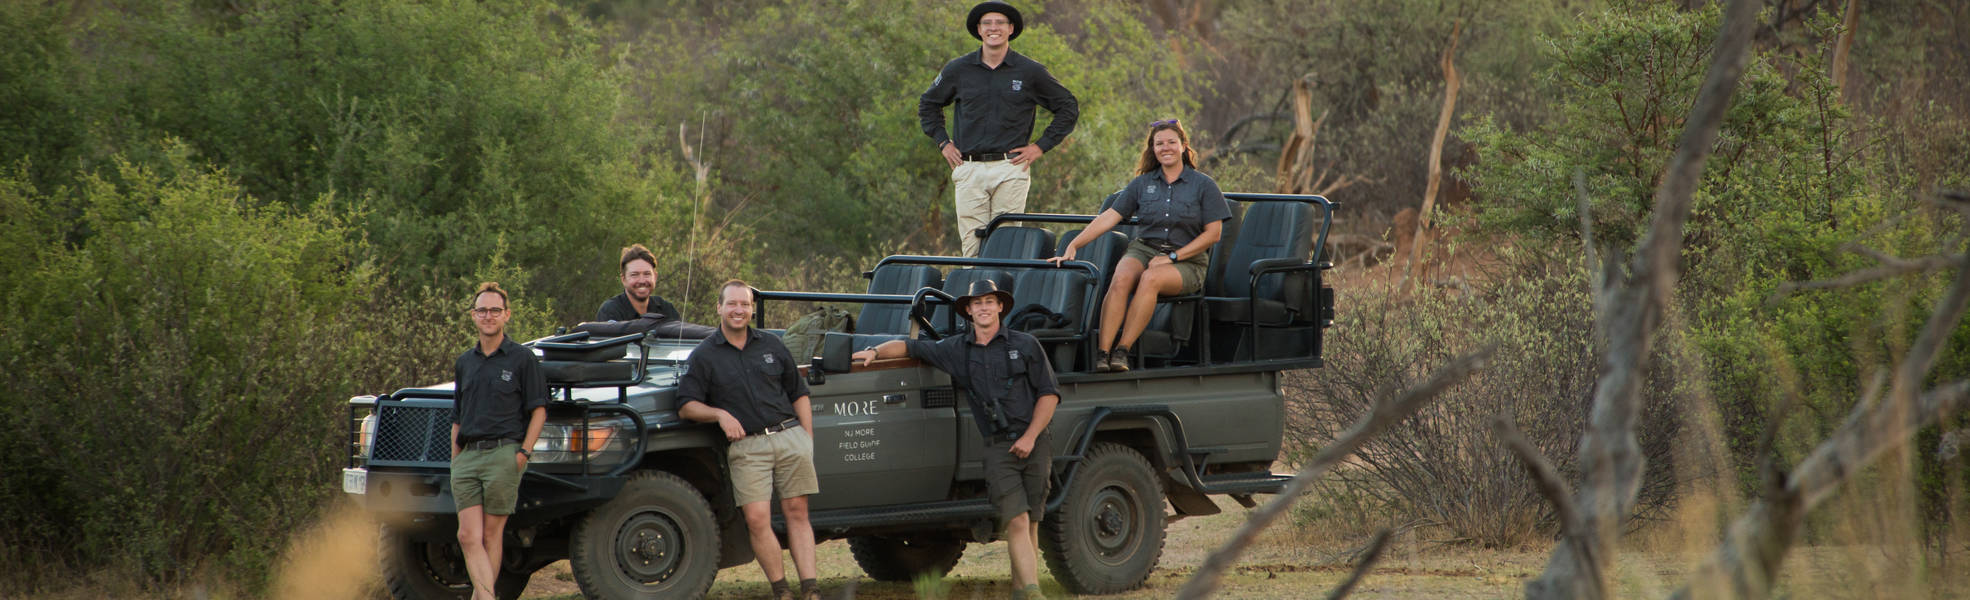 Ranger-Ausbildung in Südafrika als Sabbatical